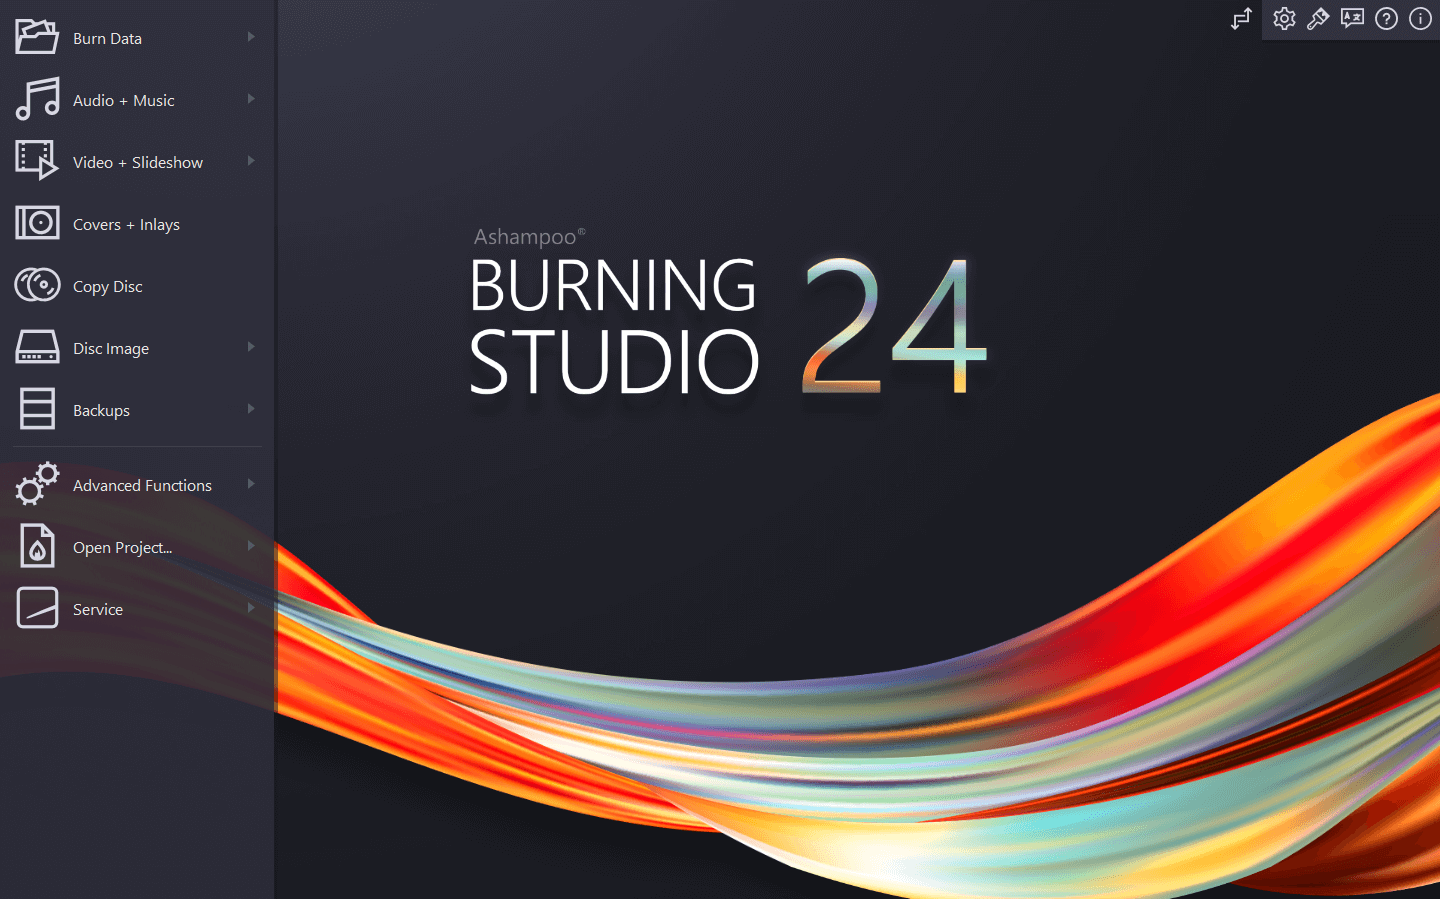 Ashampoo Burning Studio 24 CD Key